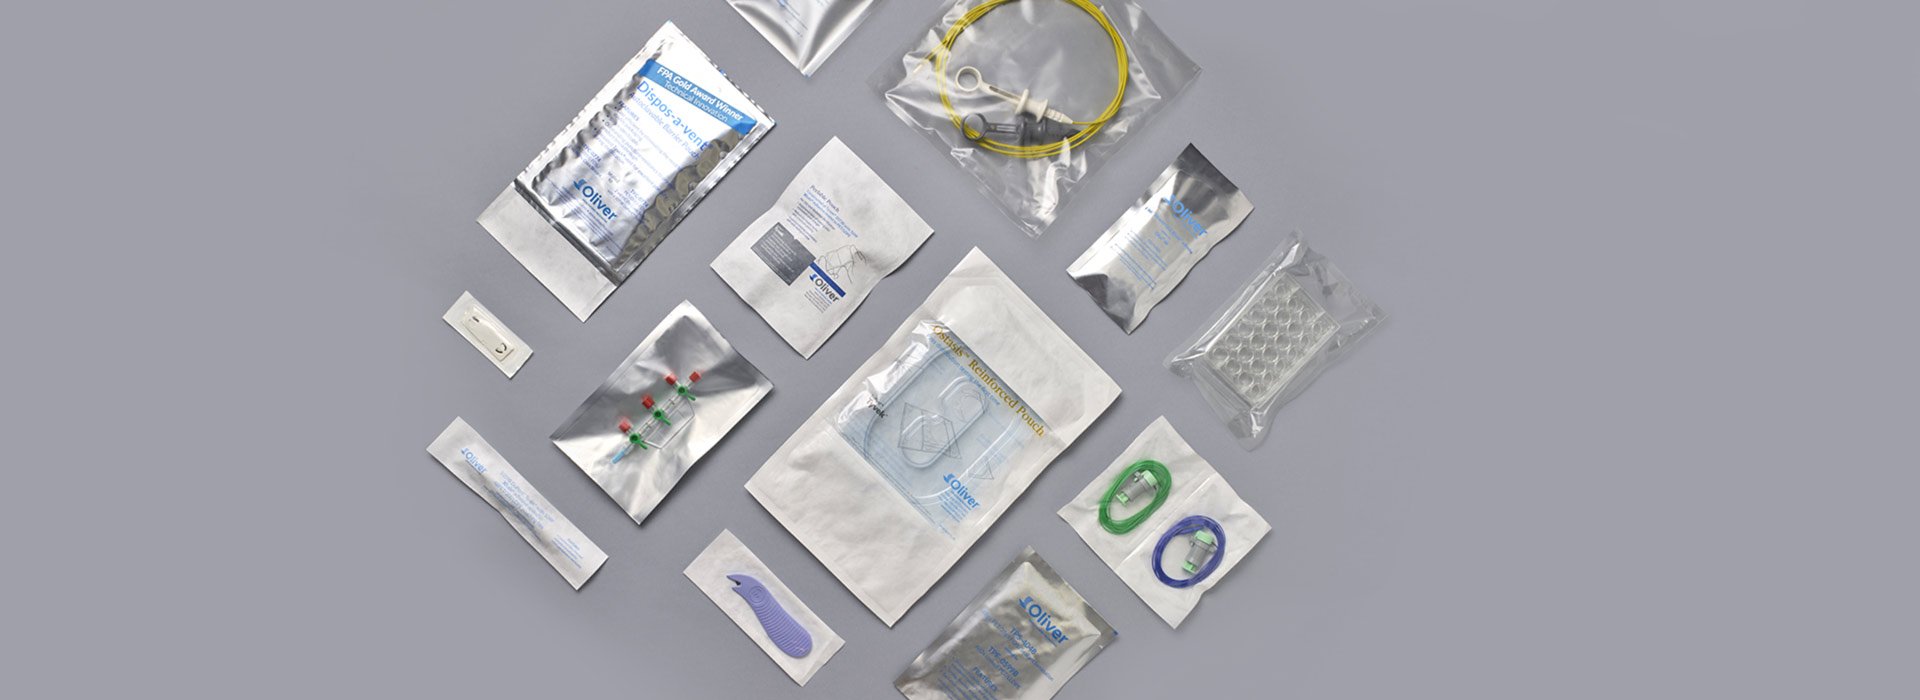 Beutelverpackungen für Gesundheits- und Pharmaprodukte | Oliver Healthcare Packaging